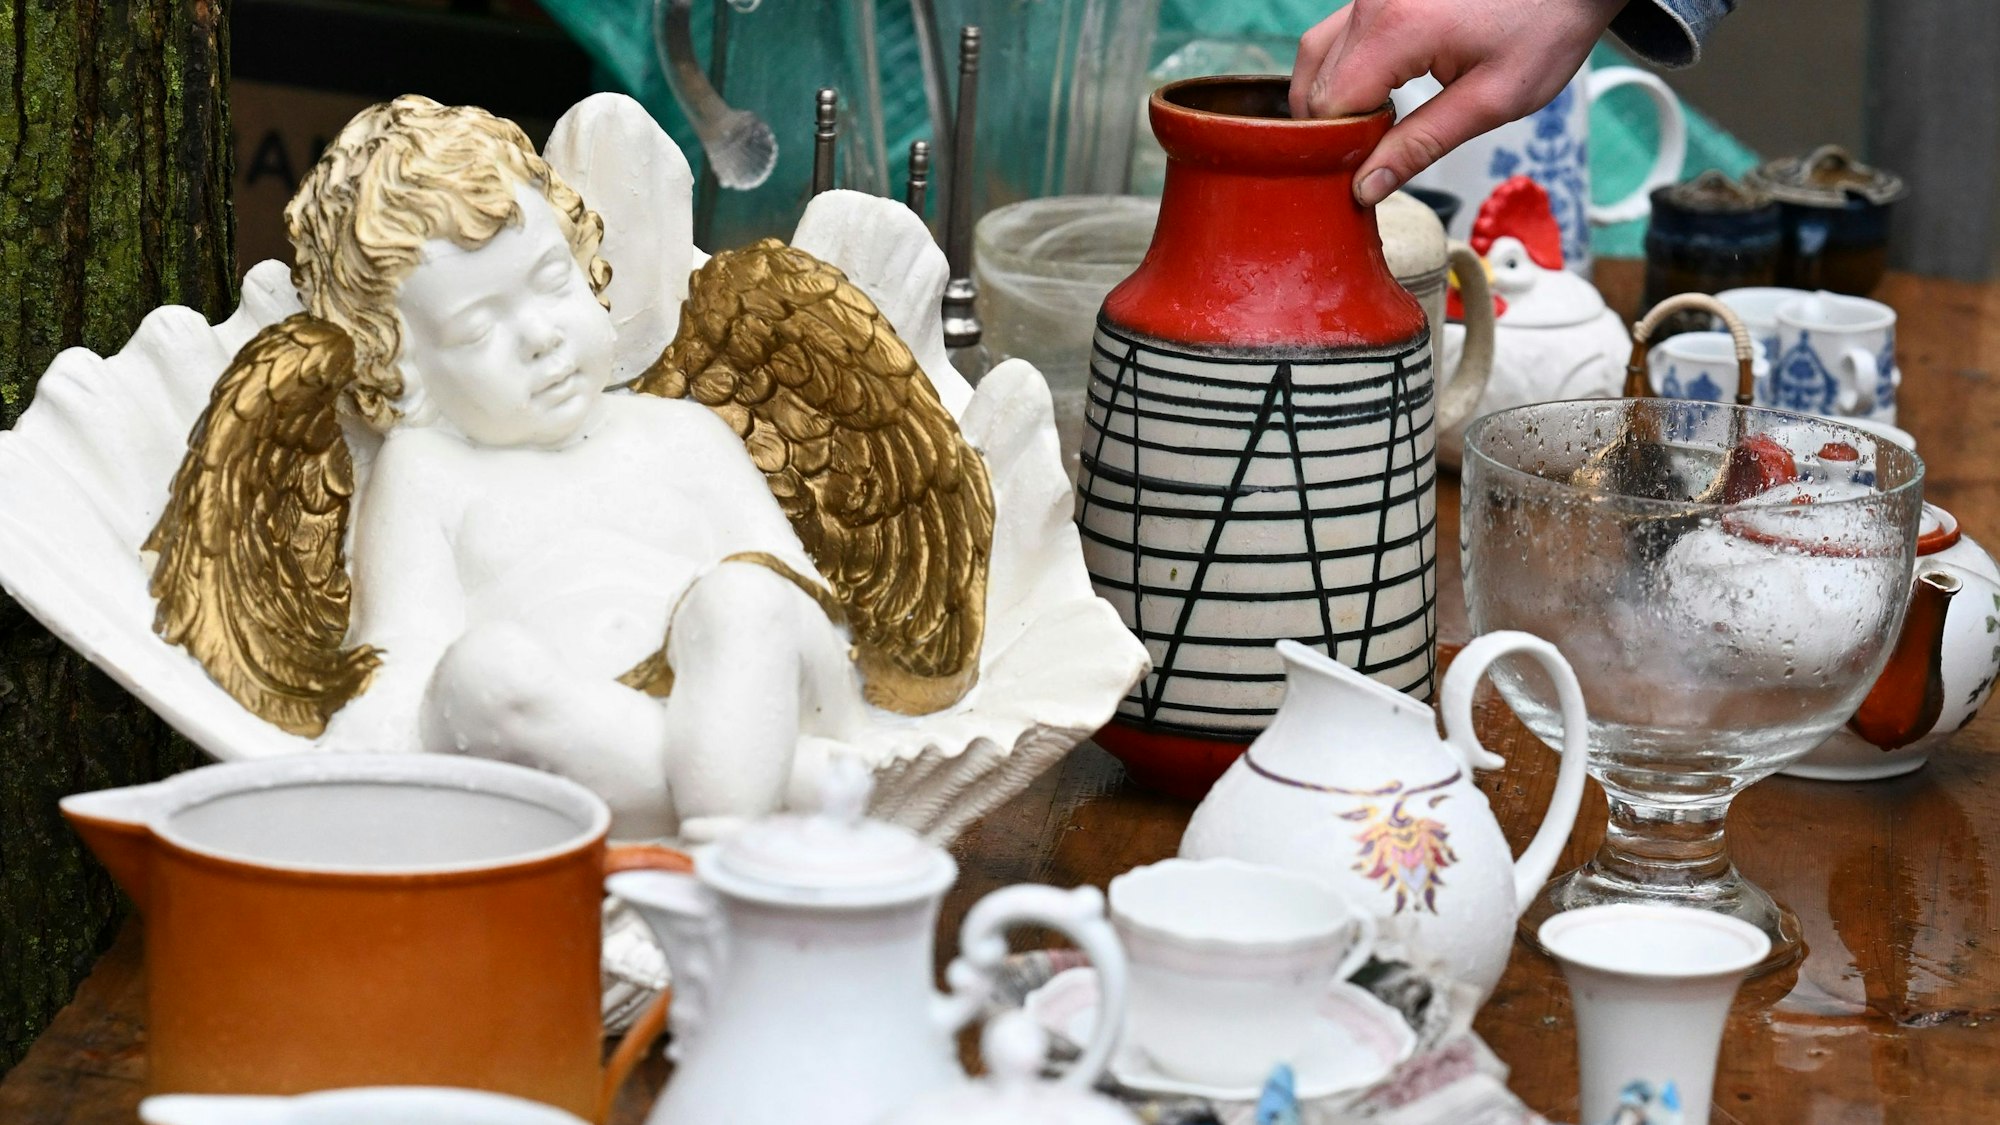 Eine Vase steht zwischen unterschiedlichen Dingen aus Keramik auf einem Flohmarkt.